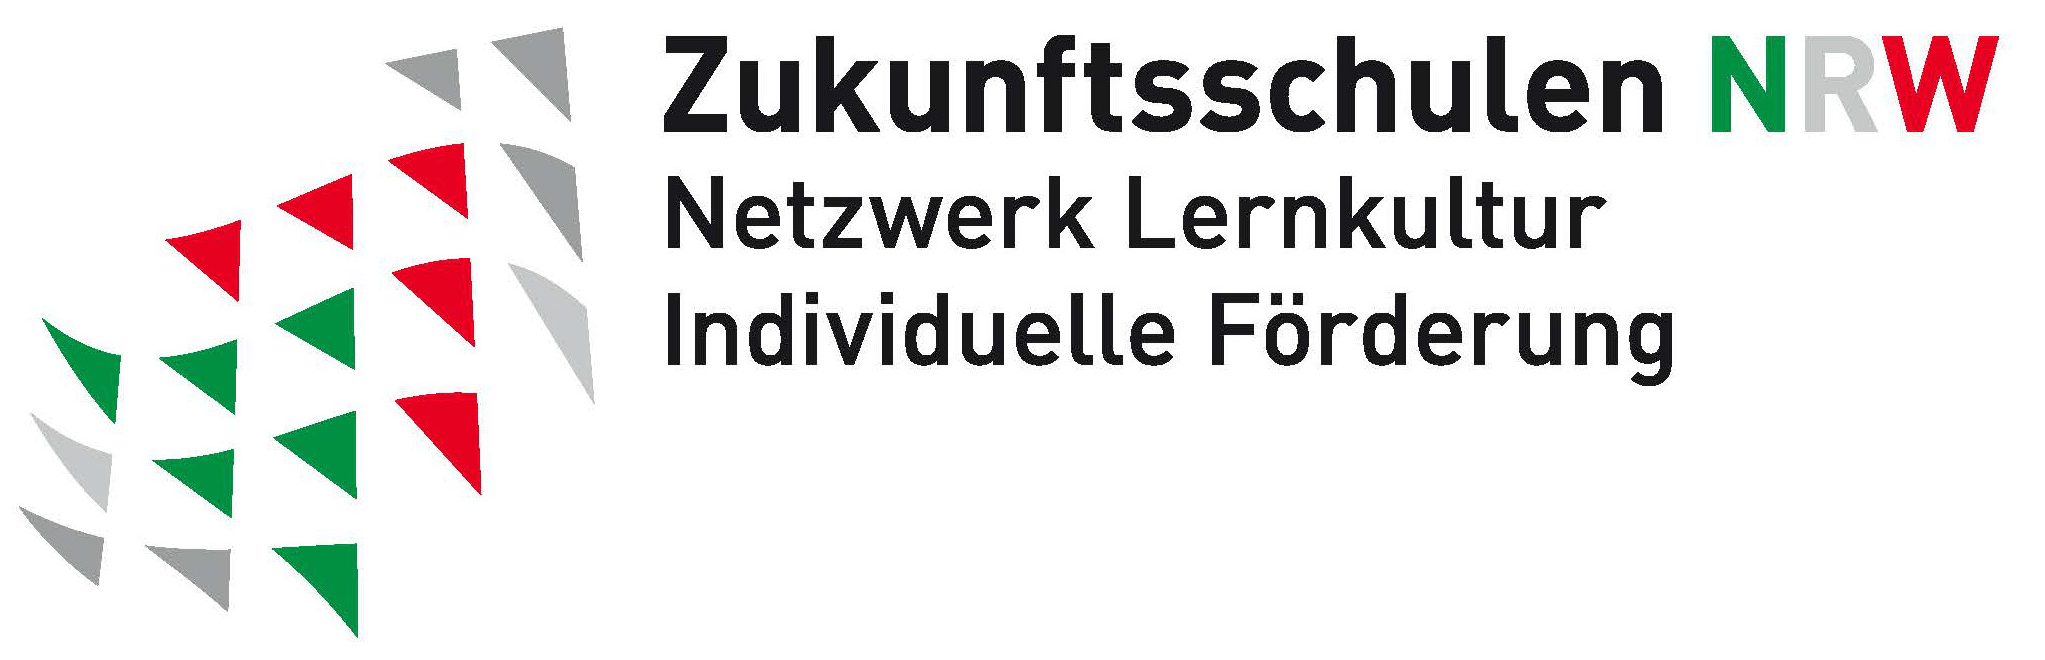 Zukunftsschulen NRW Logo